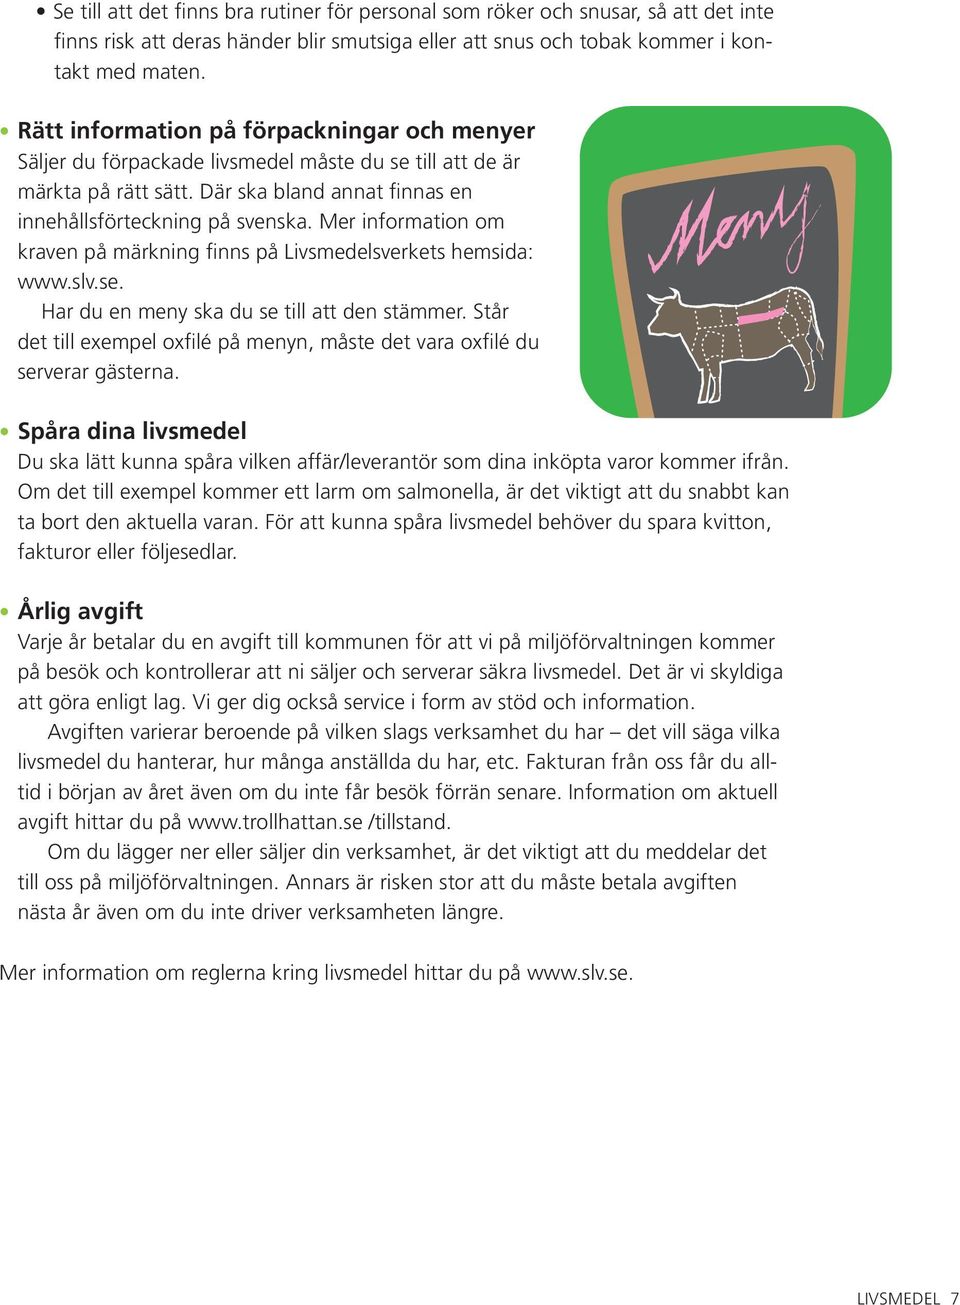 Mer information om kraven på märkning finns på Livsmedelsverkets hemsida: www.slv.se. Har du en meny ska du se till att den stämmer.